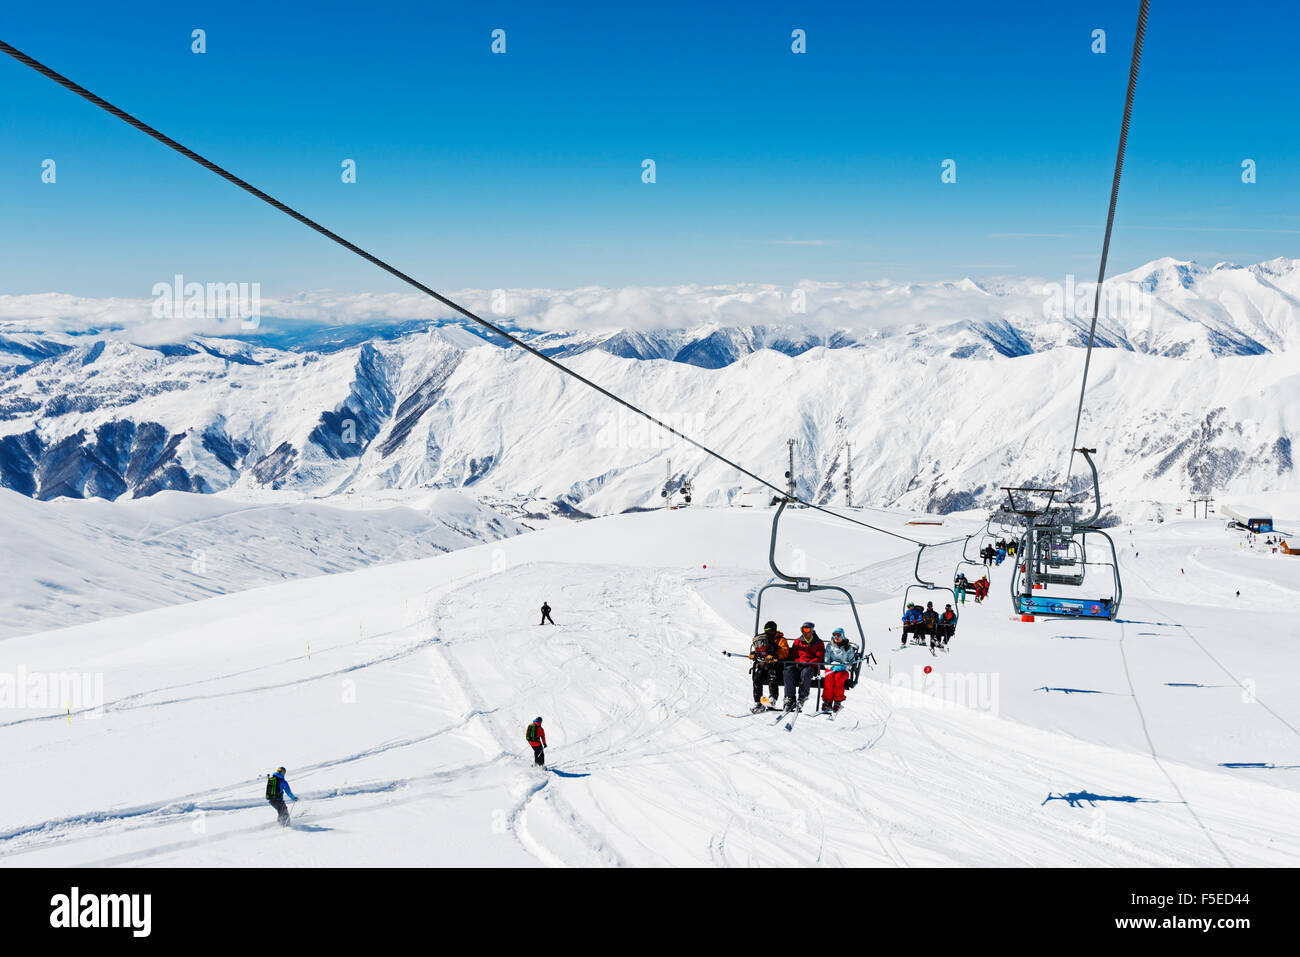 Ski lift, Gudauri ski resort, Georgia, regione del Caucaso e in Asia Centrale, Asia Foto Stock